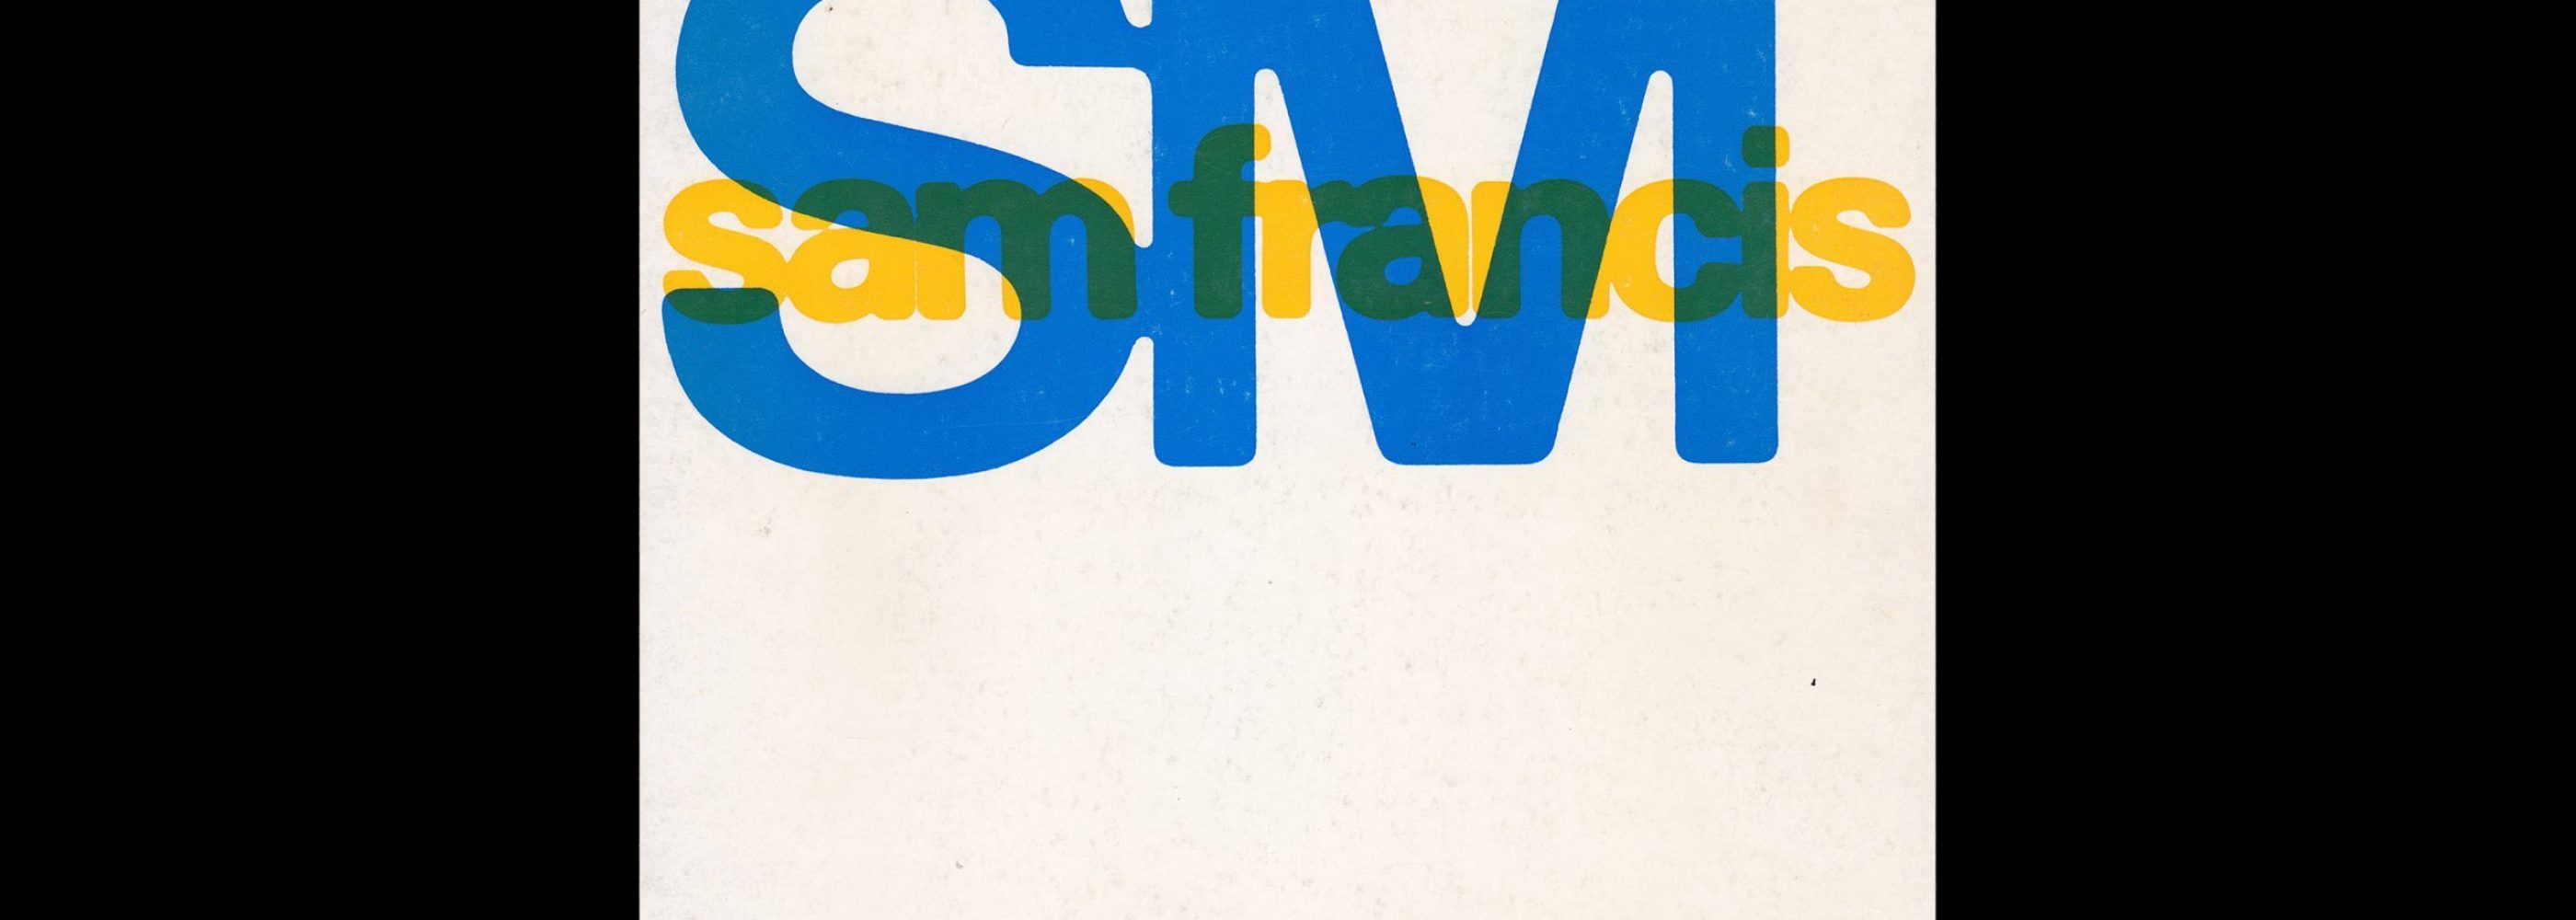 Sam Francis, Stedelijk Museum, Amsterdam, 1968 designed by Wim Crouwel and Jolijn van de Wouw (Total Design)